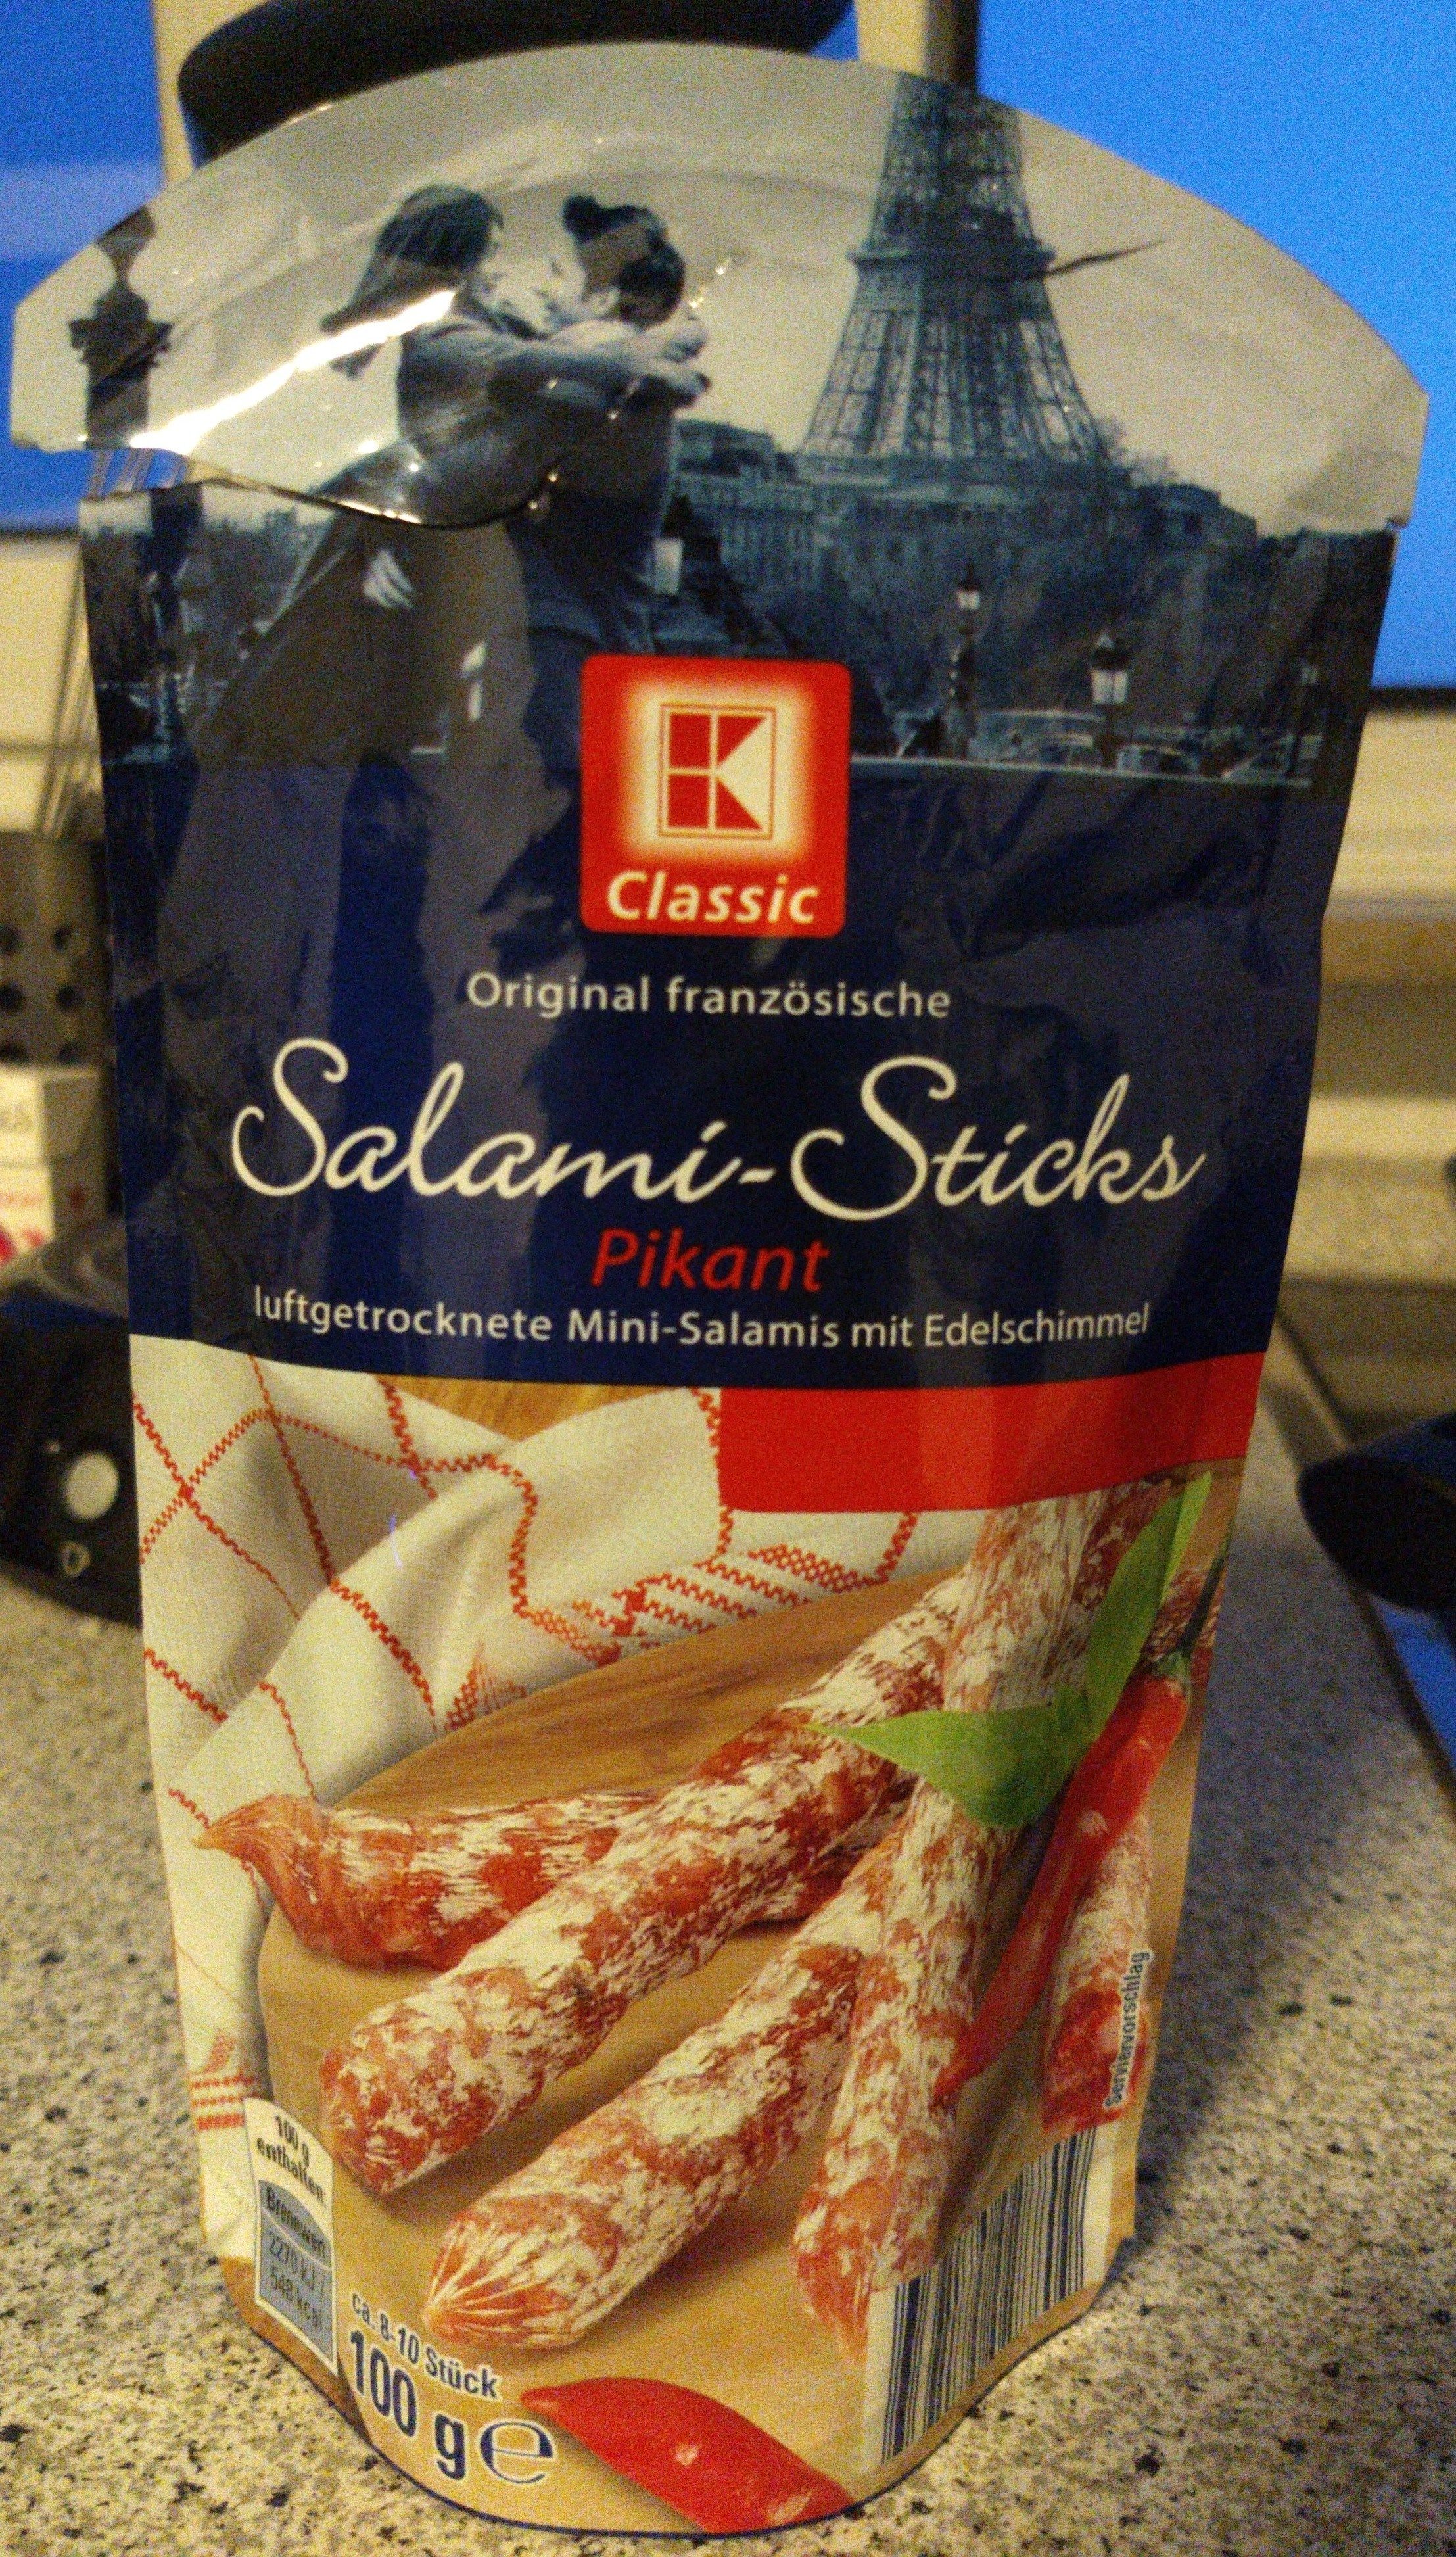 Original französische Salami-Sticks Pikant - Produkt - en